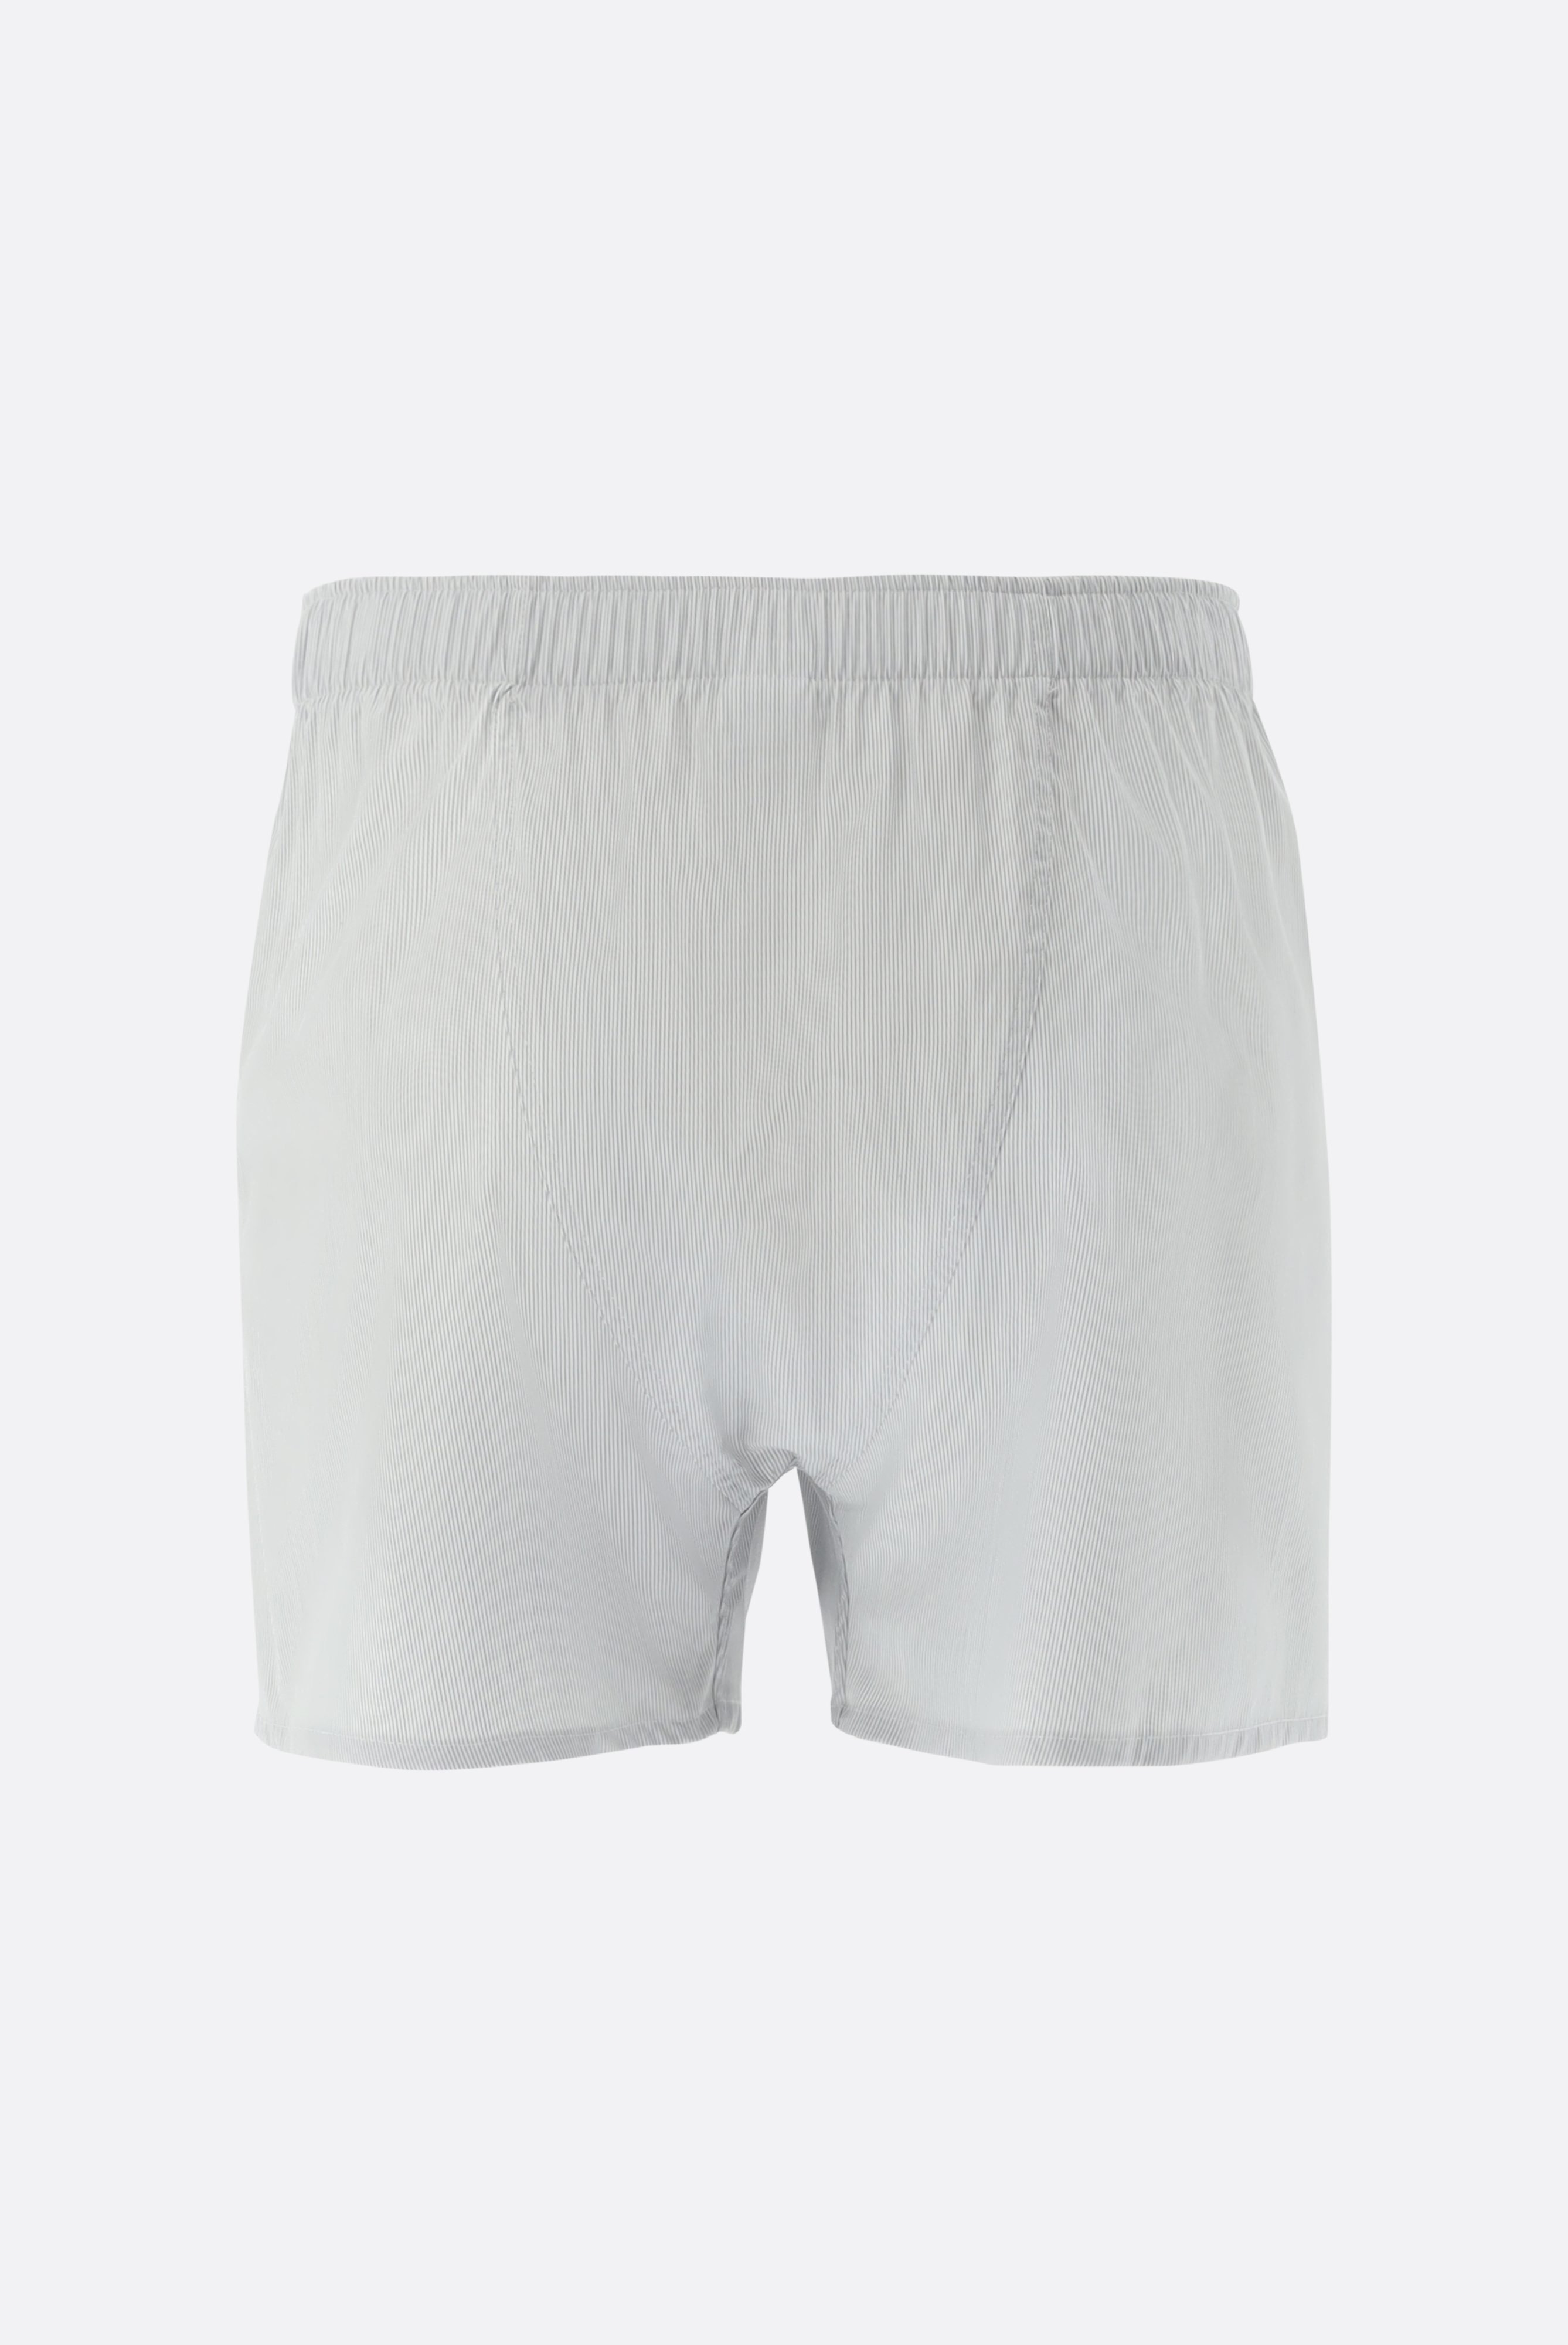 Underwear+Stiped Boxer Shorts+91.1100..161069.020.46